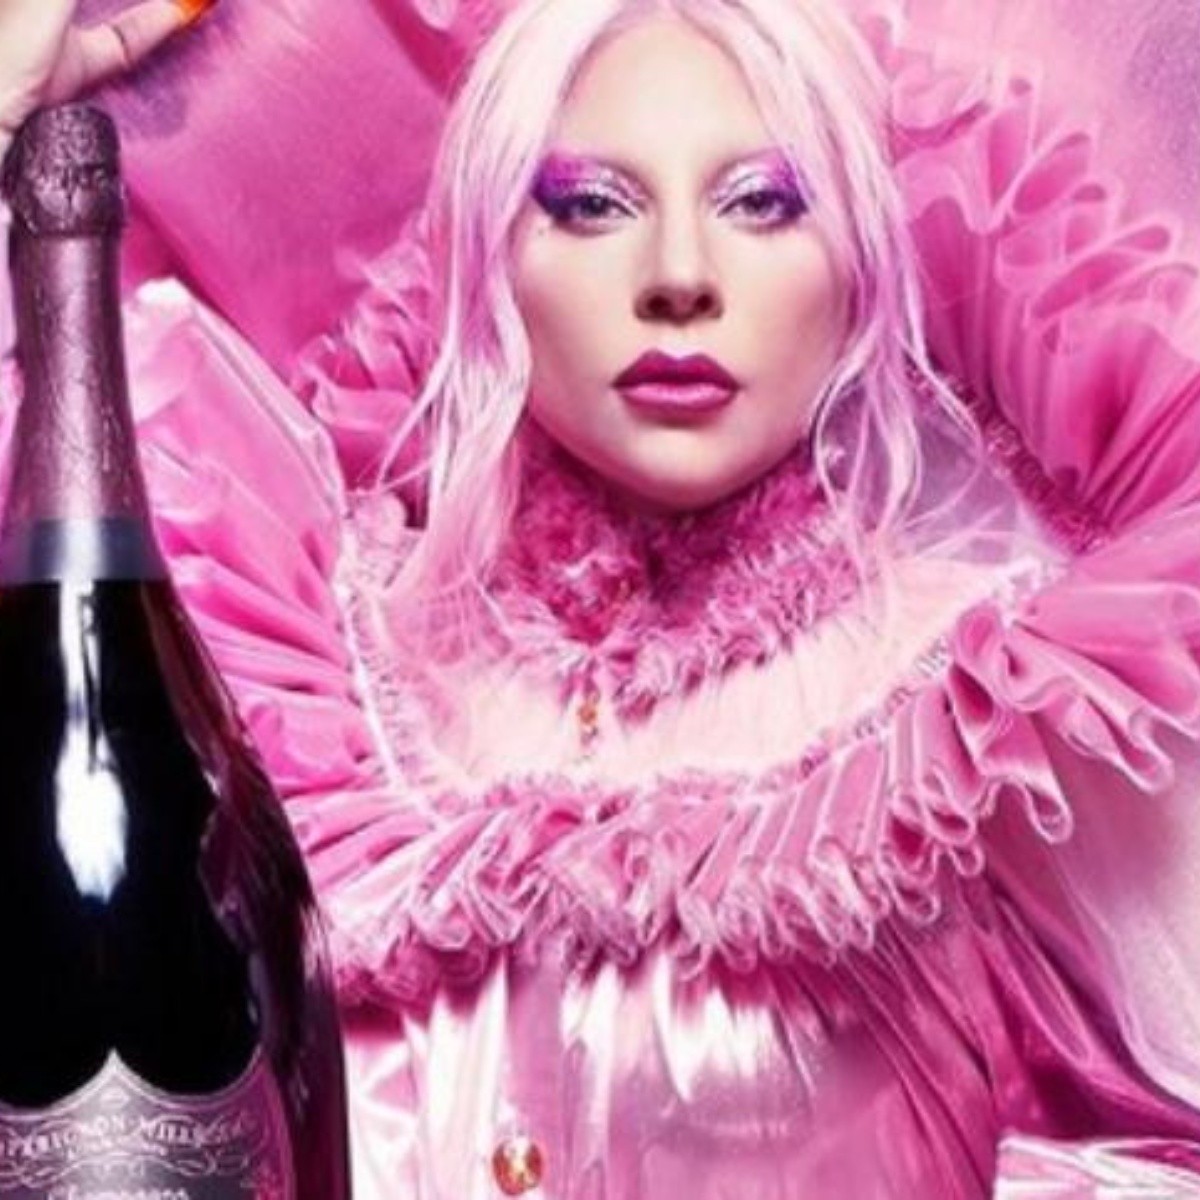 Cuánto cuesta el Dom Pérignon Lady Gaga que Peso Pluma menciona en su  canción?